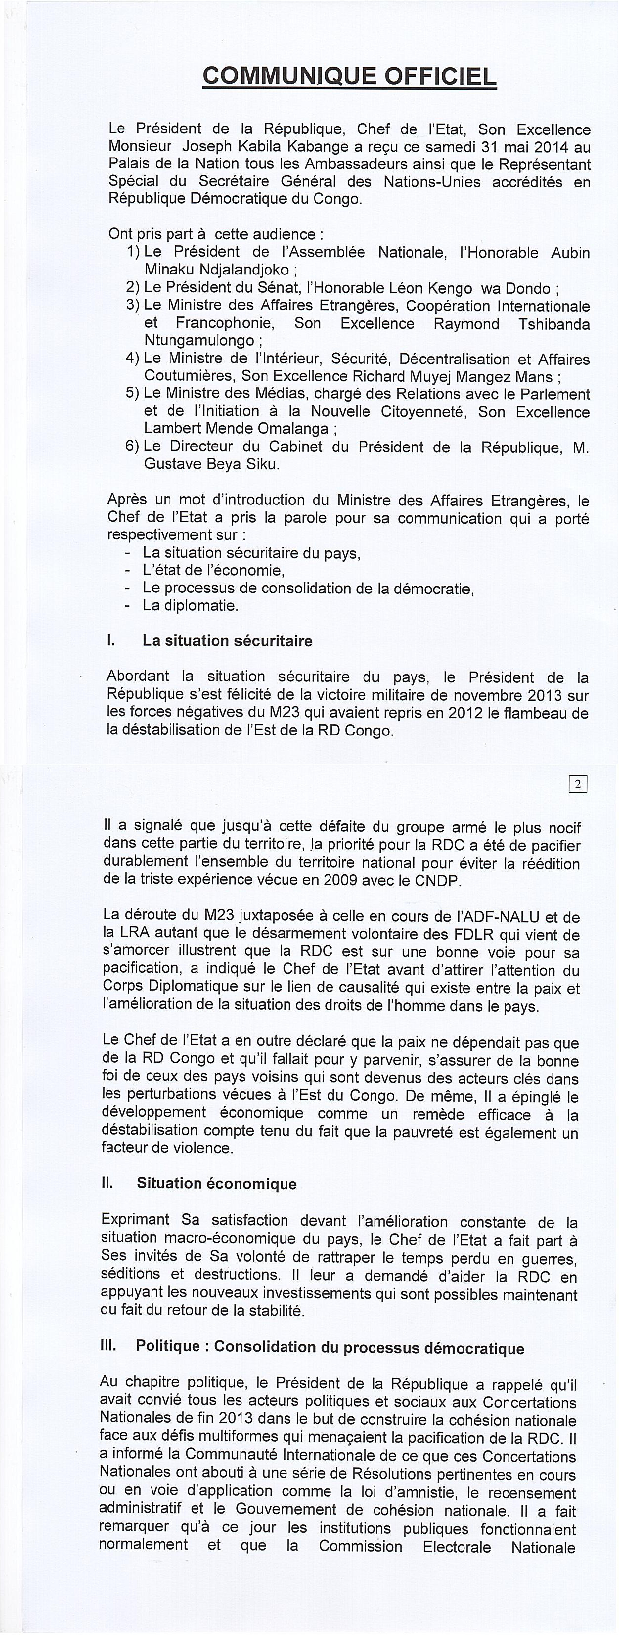 KABILA CONVOQUE SANS PREAVIS LE CORPS DIPLOMATIQUE AU PALAIS DE LA NATION Communique-kabila-pag-1-et-2